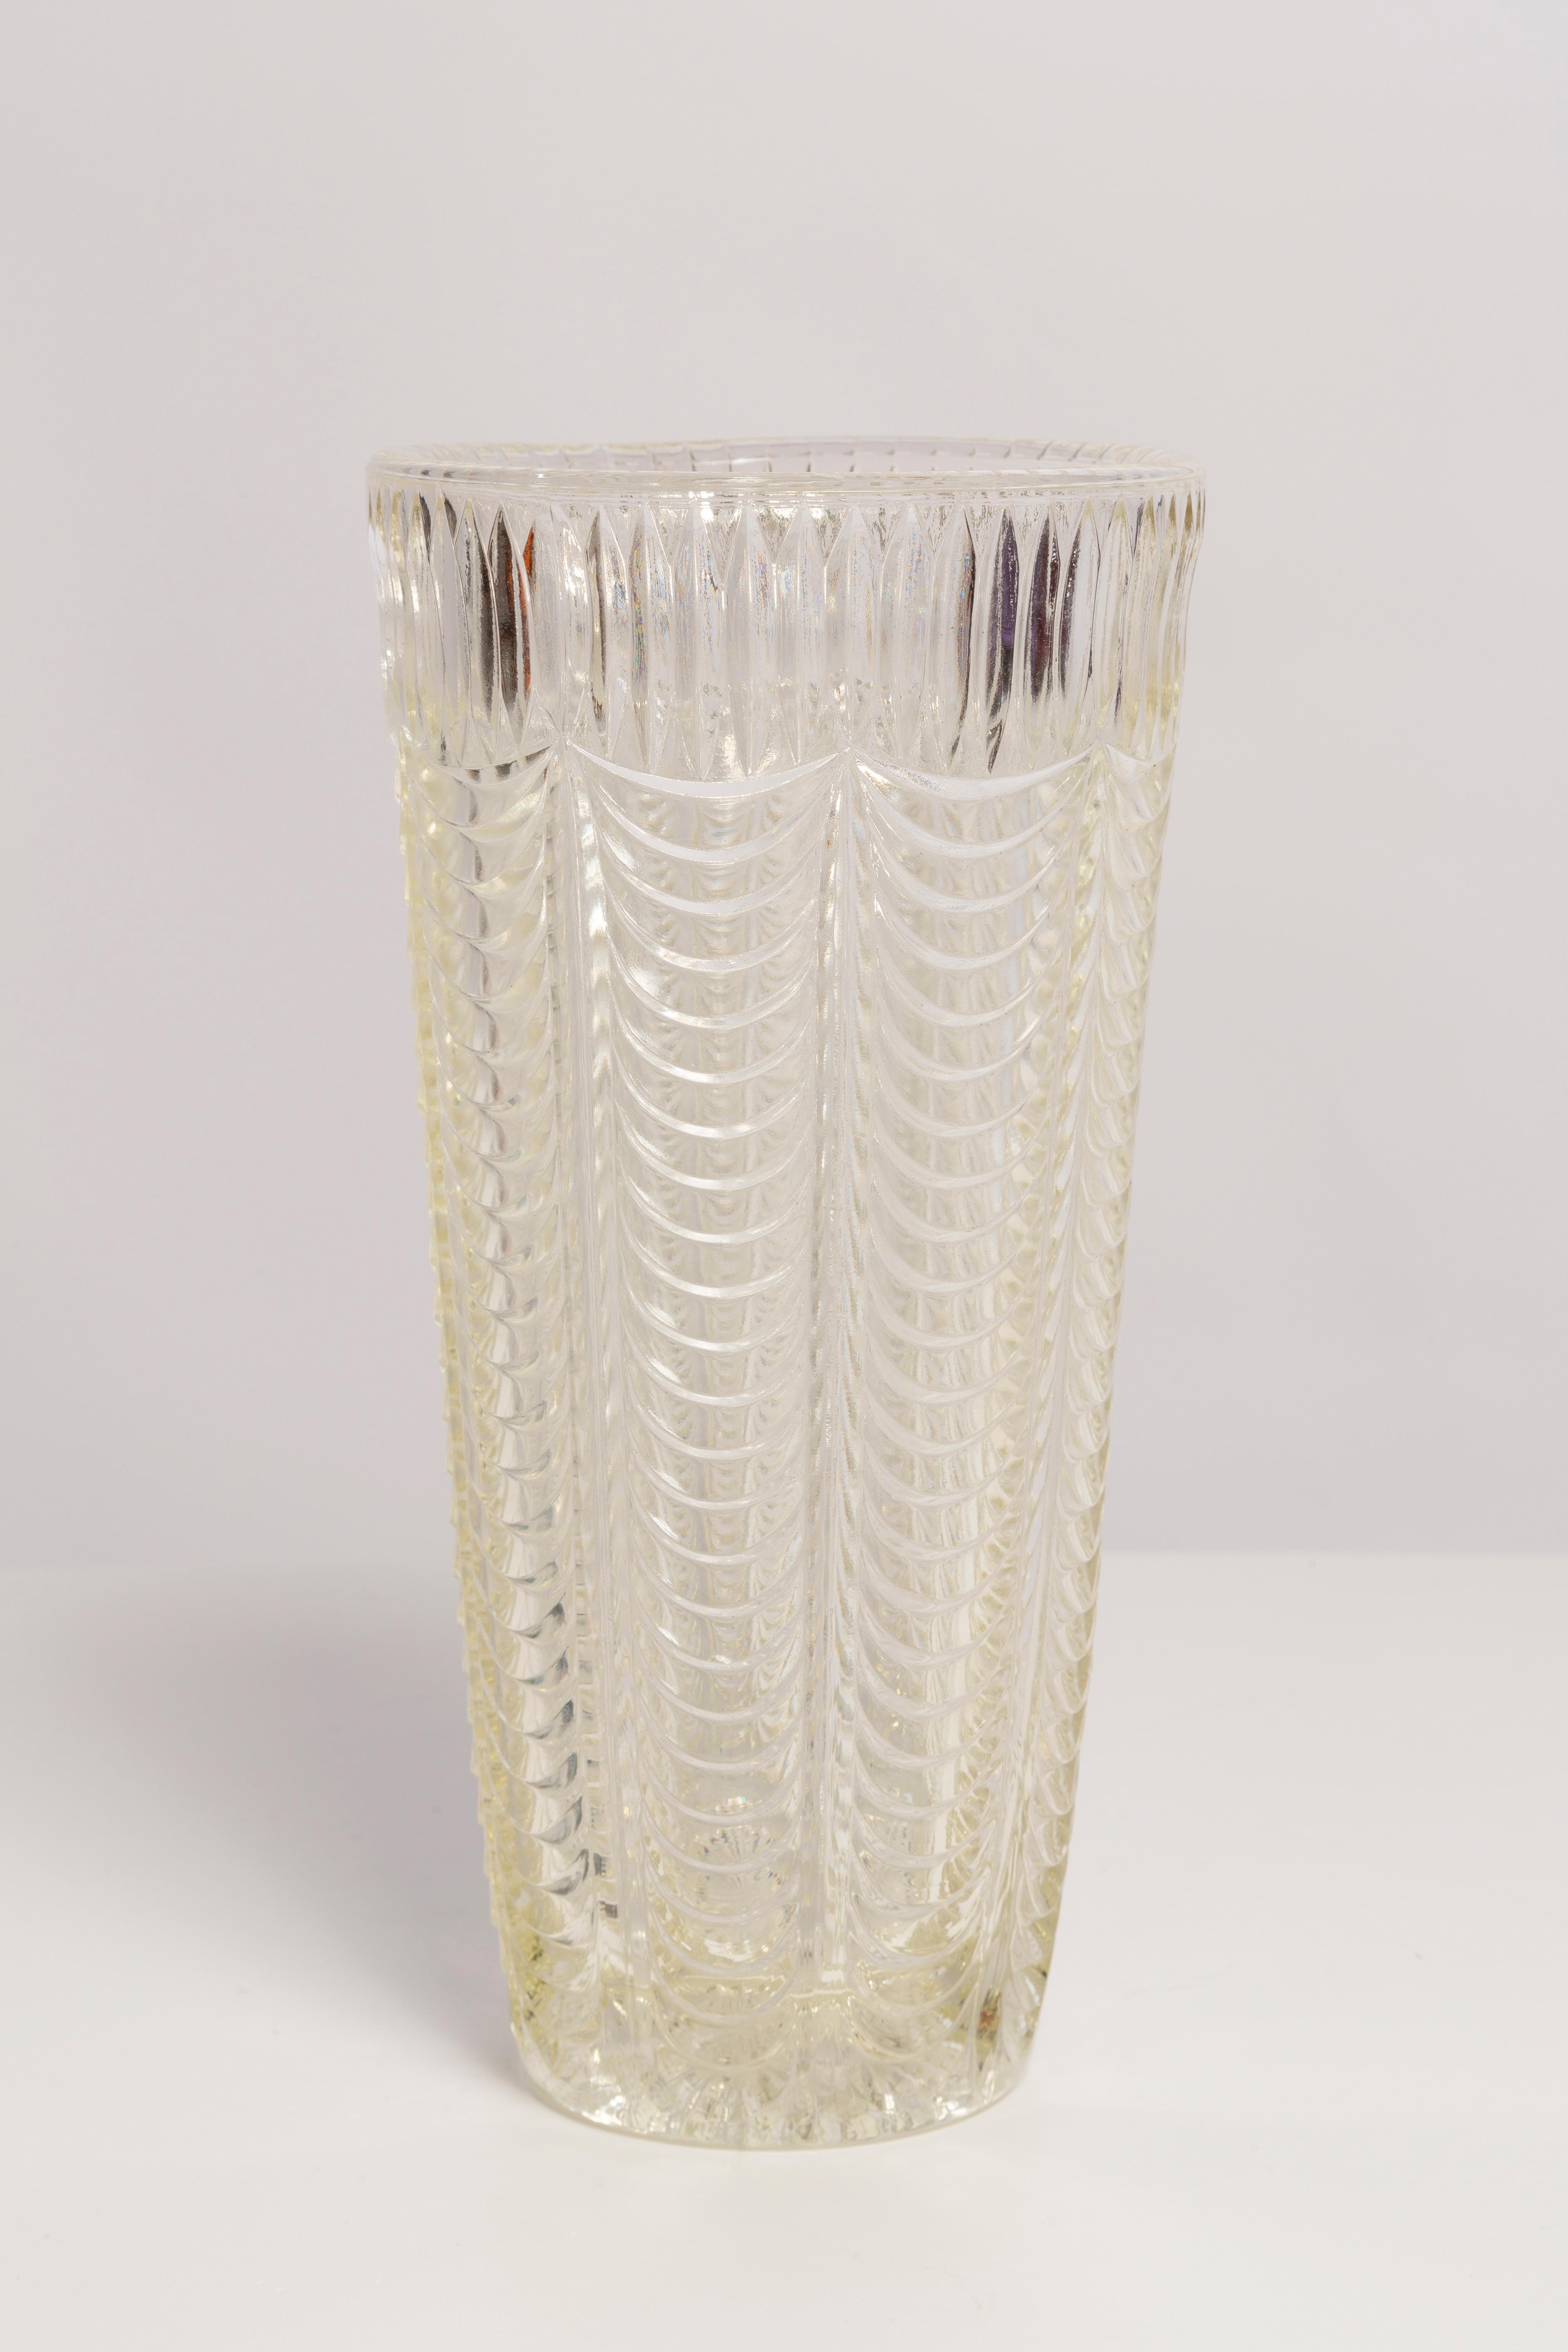 Transparente Vase in erstaunlichem Zustand. Produziert in den 1960er Jahren.
Glas in perfektem Zustand. Die Vase sieht aus, als wäre sie gerade erst aus der Schachtel genommen worden.

Keine Zacken, Mängel etc. Die äußere Oberfläche ist